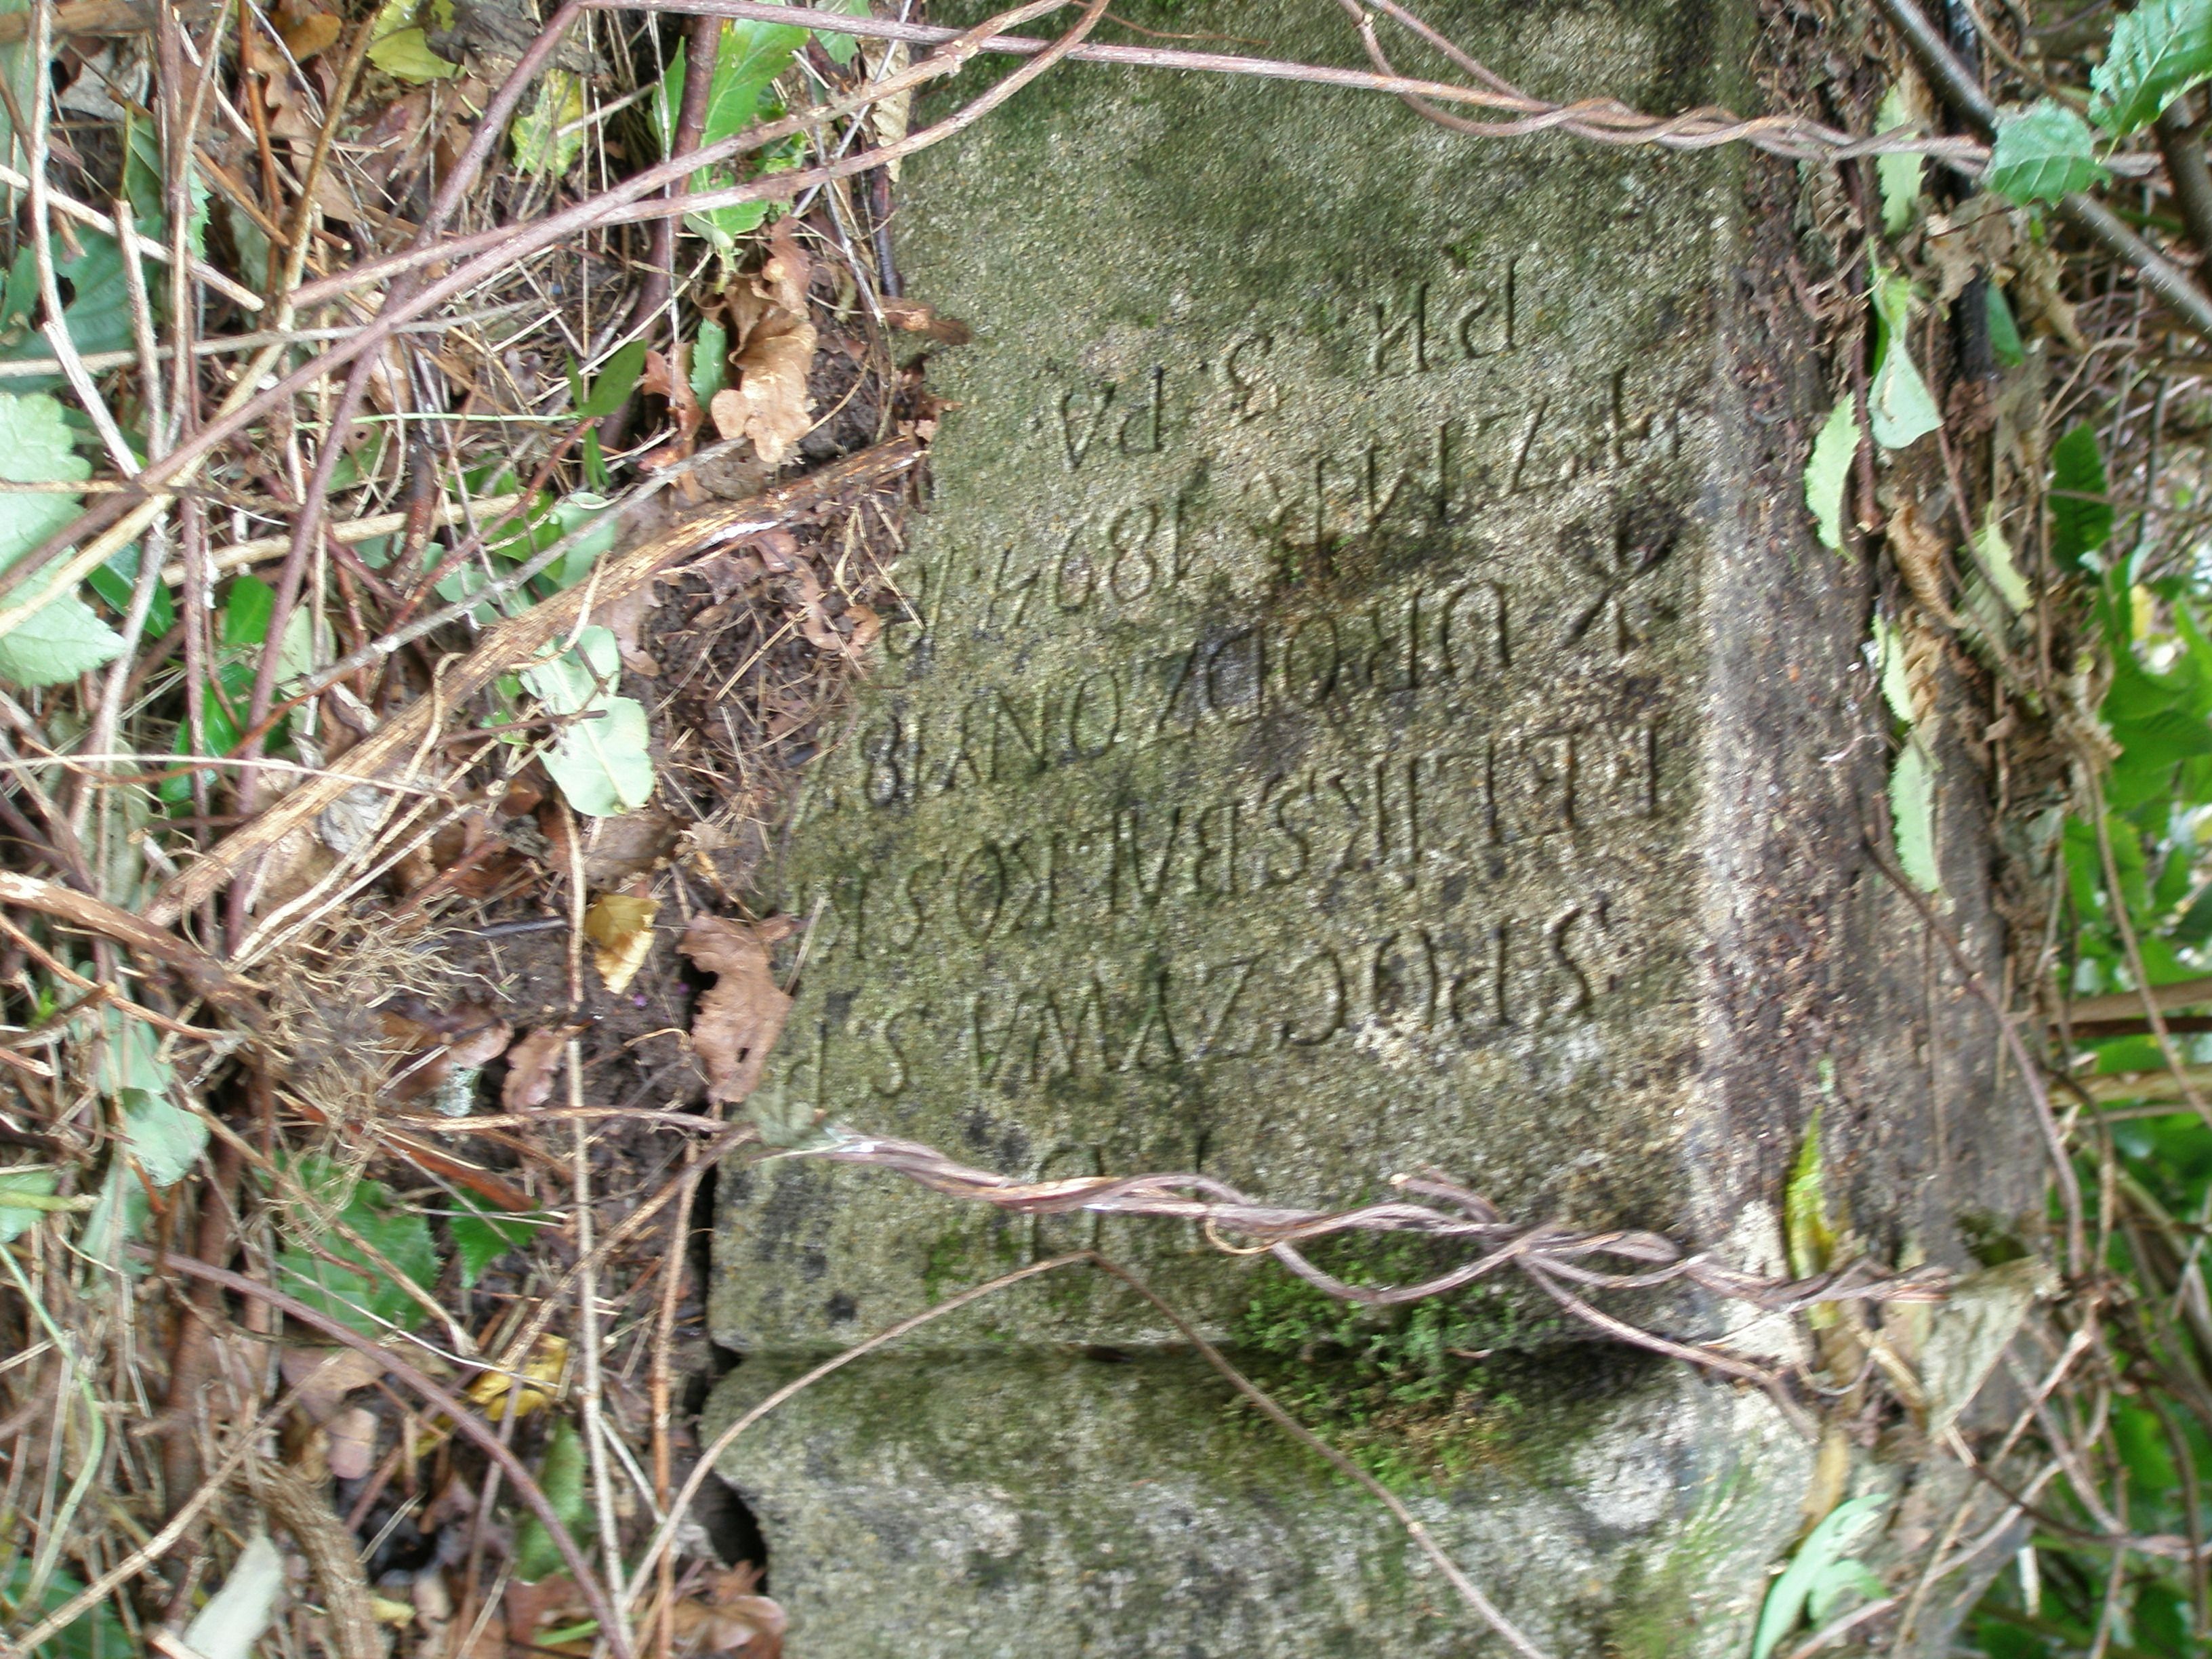 Inskrypcja z nagrobka Feliksa Bałkowskiego, cmentarz w Potoku Złotym, stan z 2006